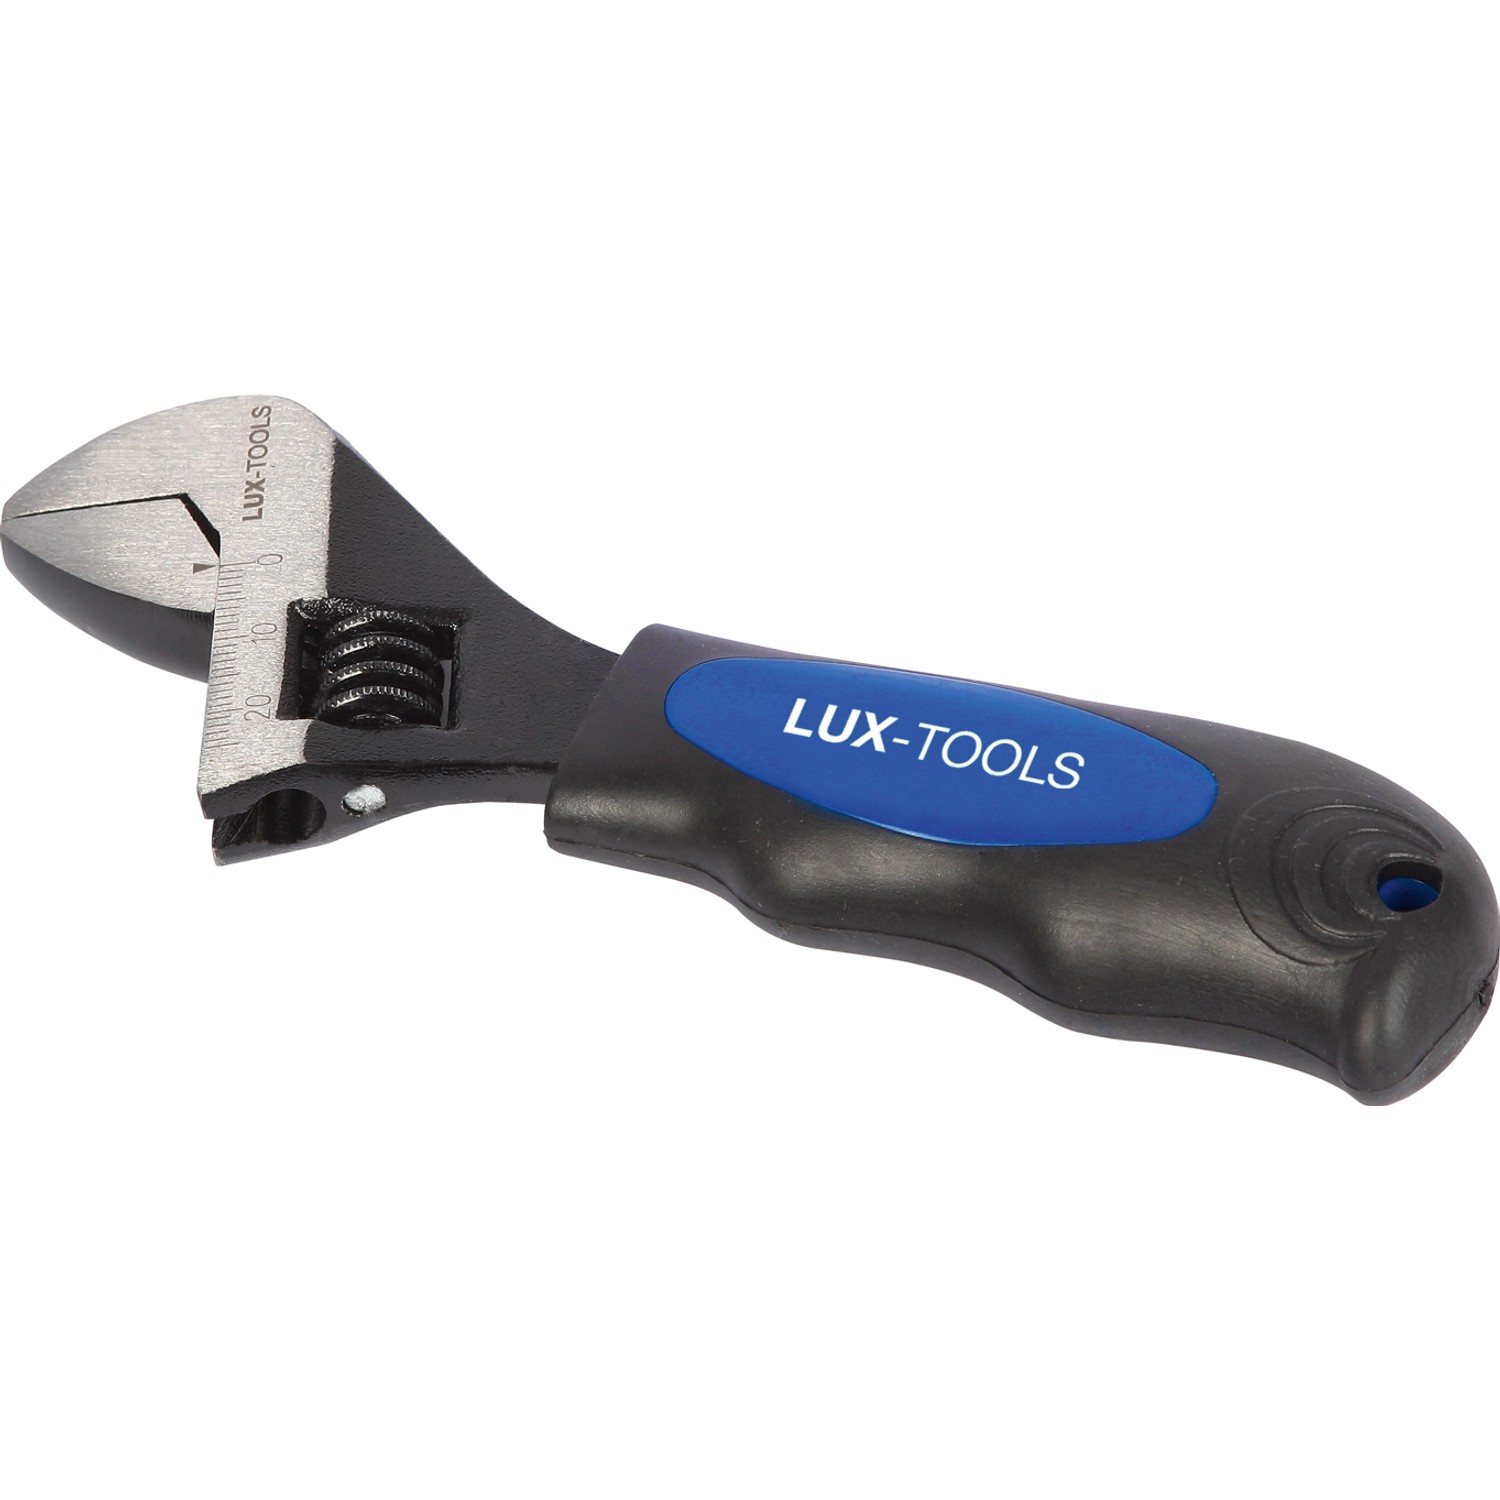 LUX Rollgabelschlüssel von LUX-TOOLS